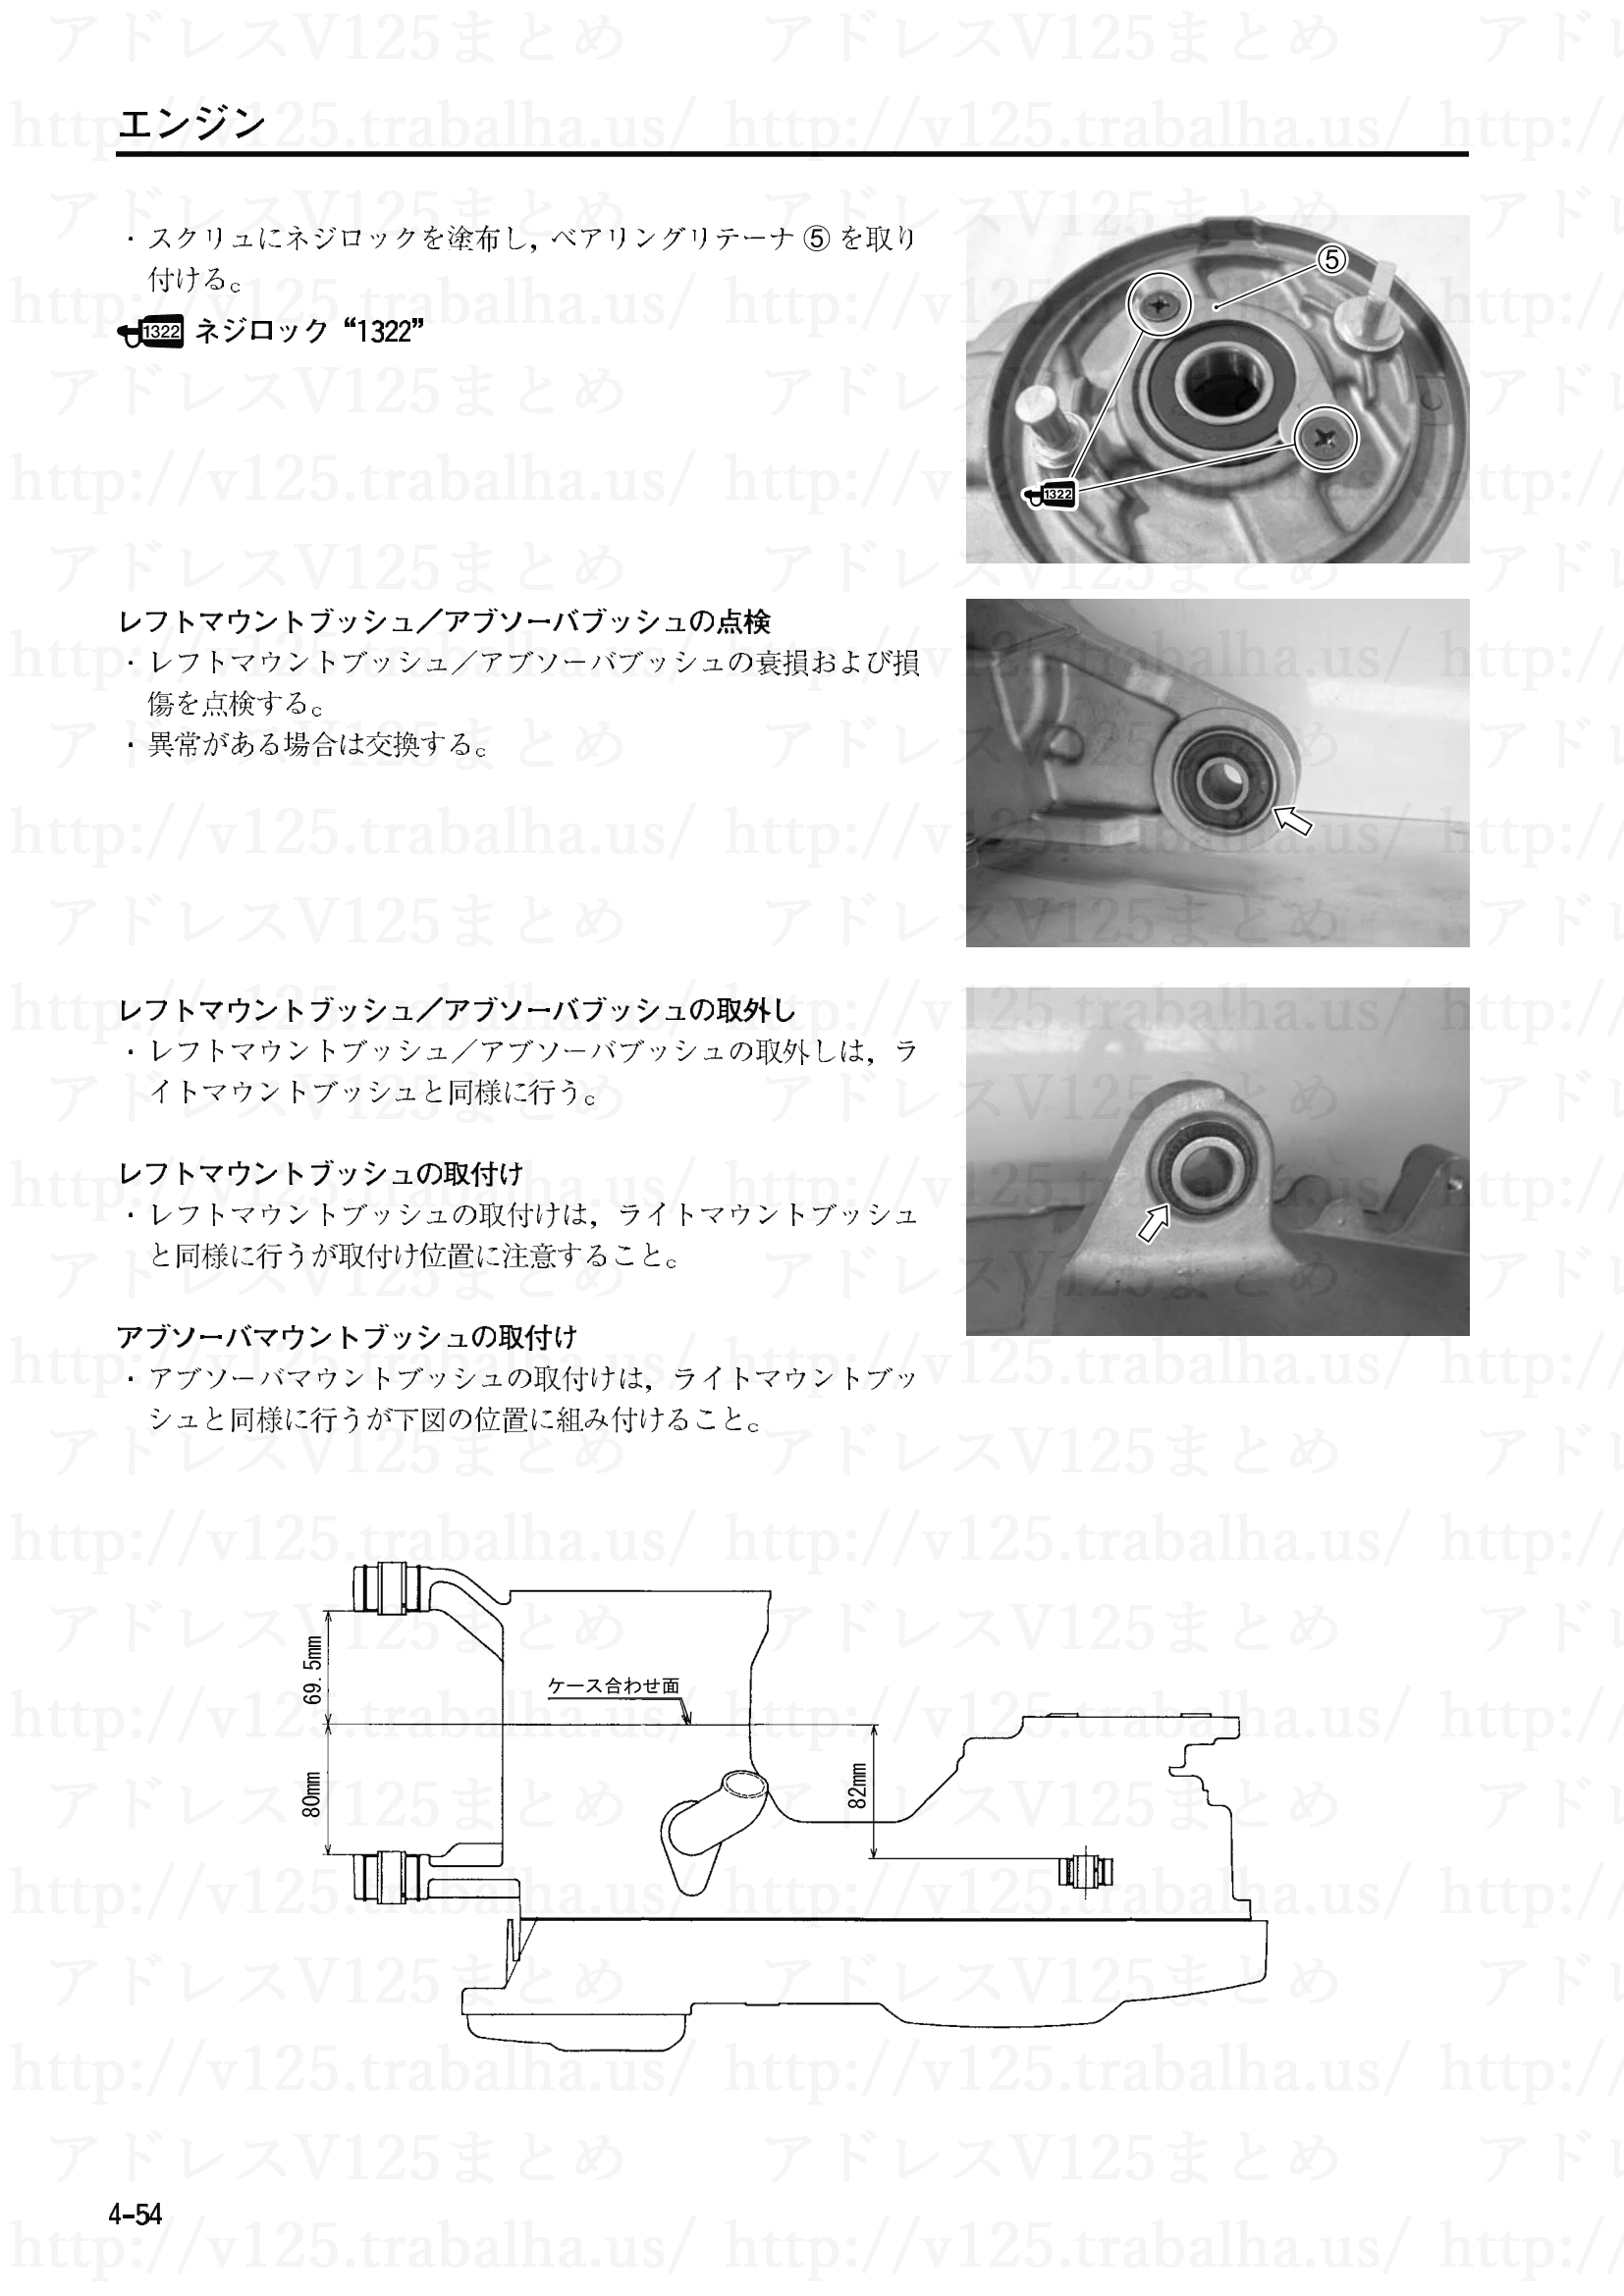 4-54【エンジン】エンジン部組部品の点検32